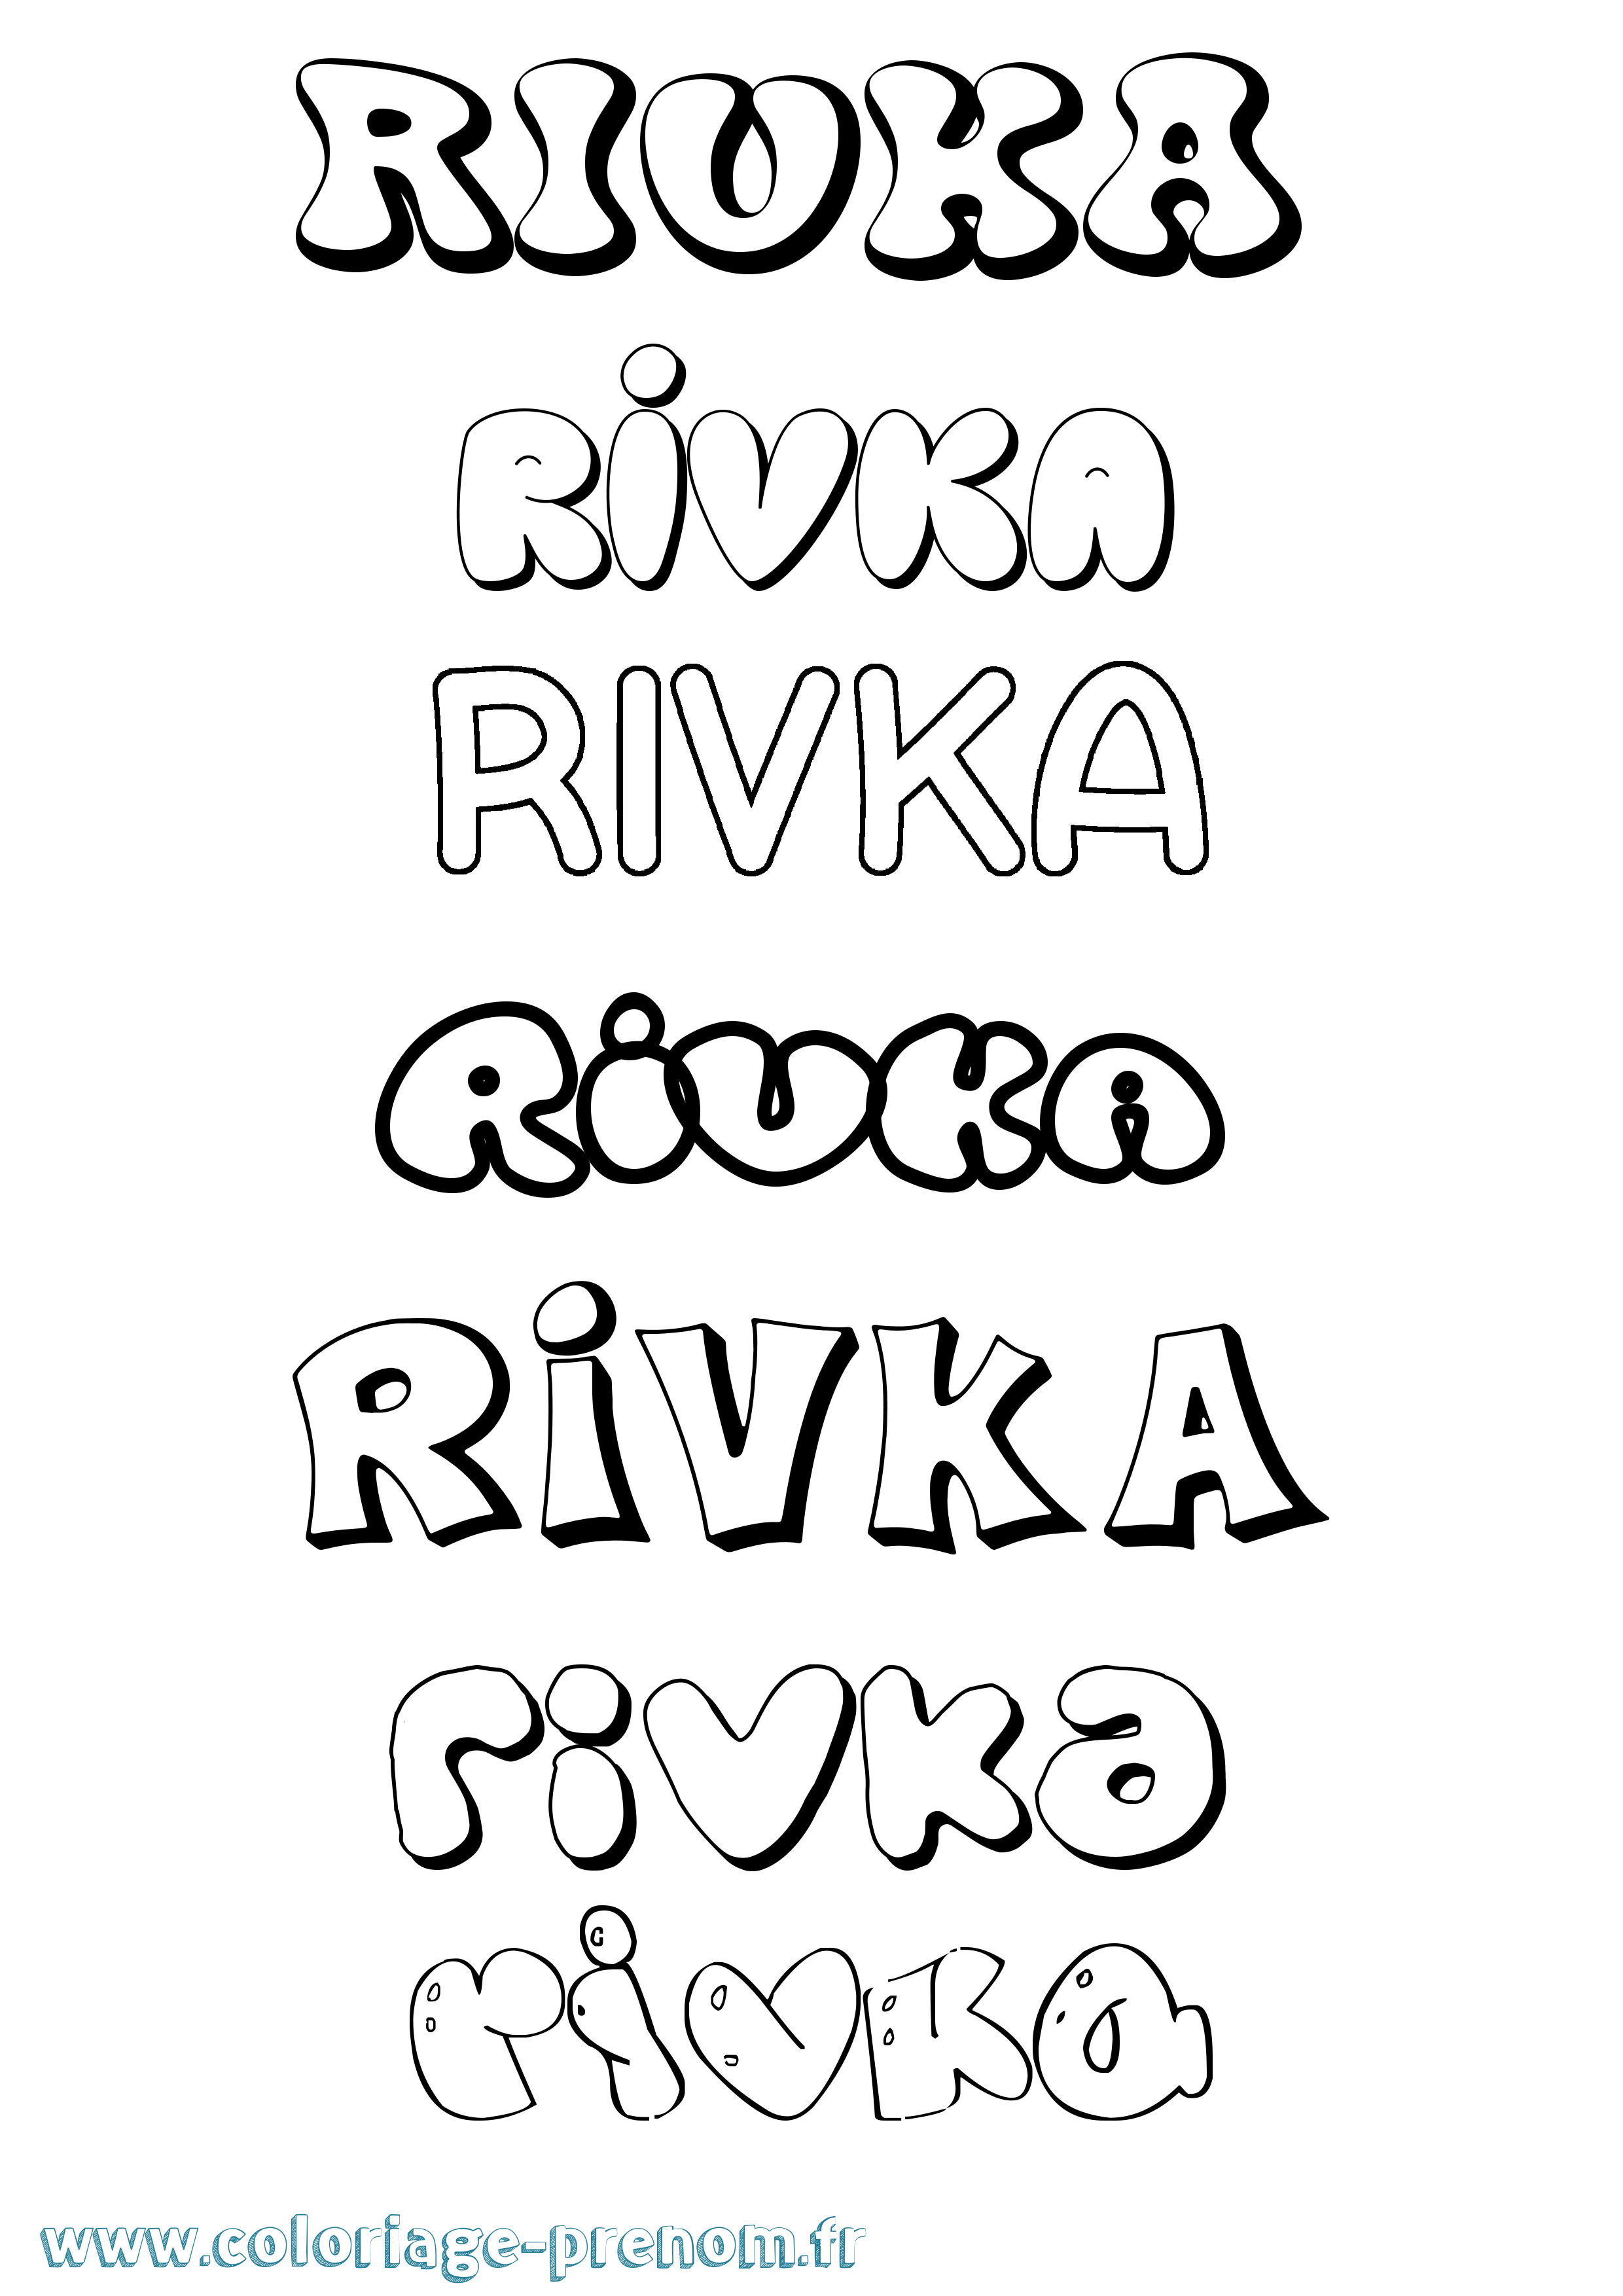 Coloriage prénom Rivka Bubble